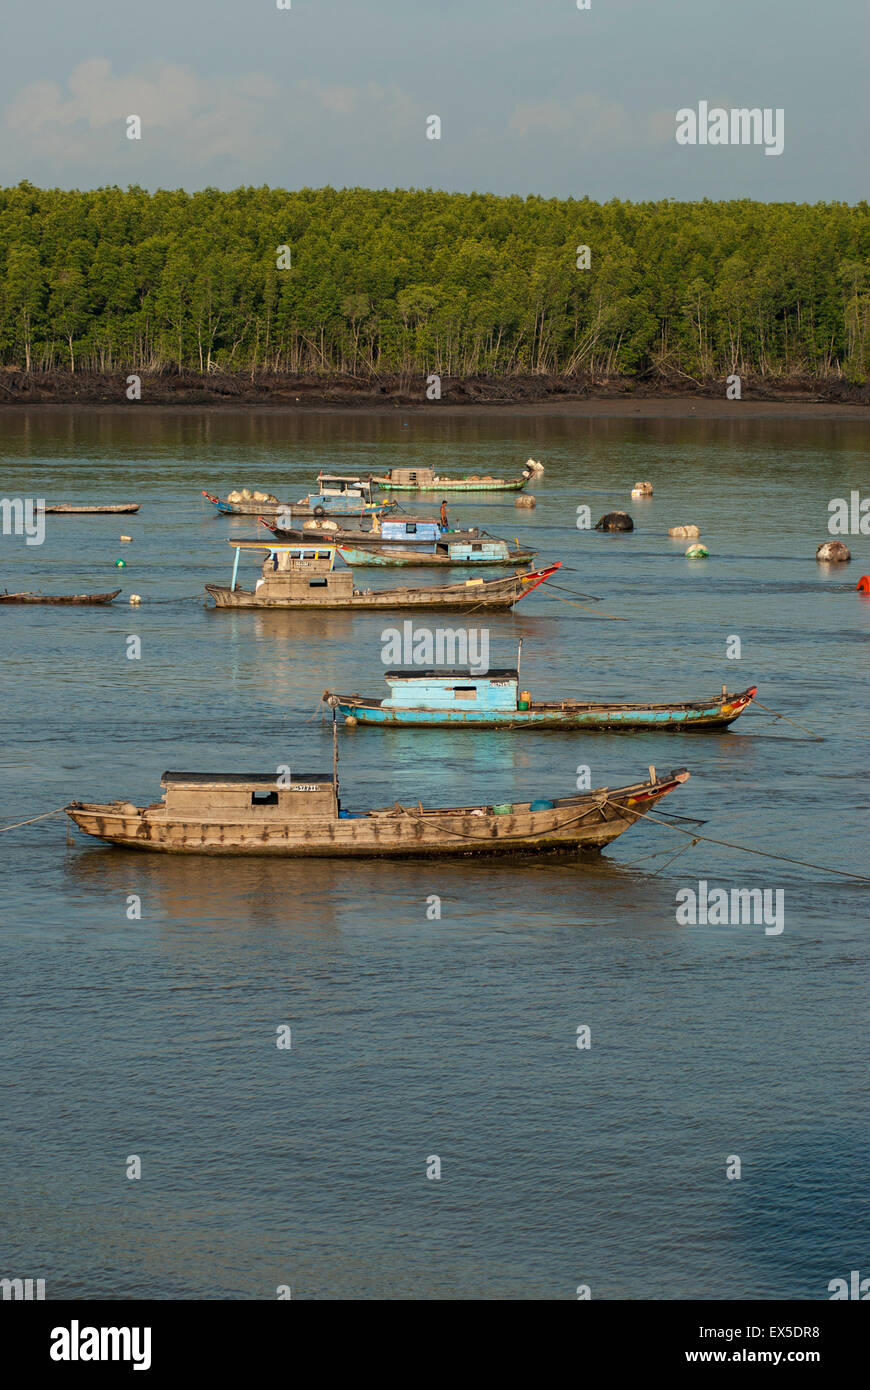 Fishing boats in the Saigon river near Ho Chi Minh City, Vietnam Stock Photo